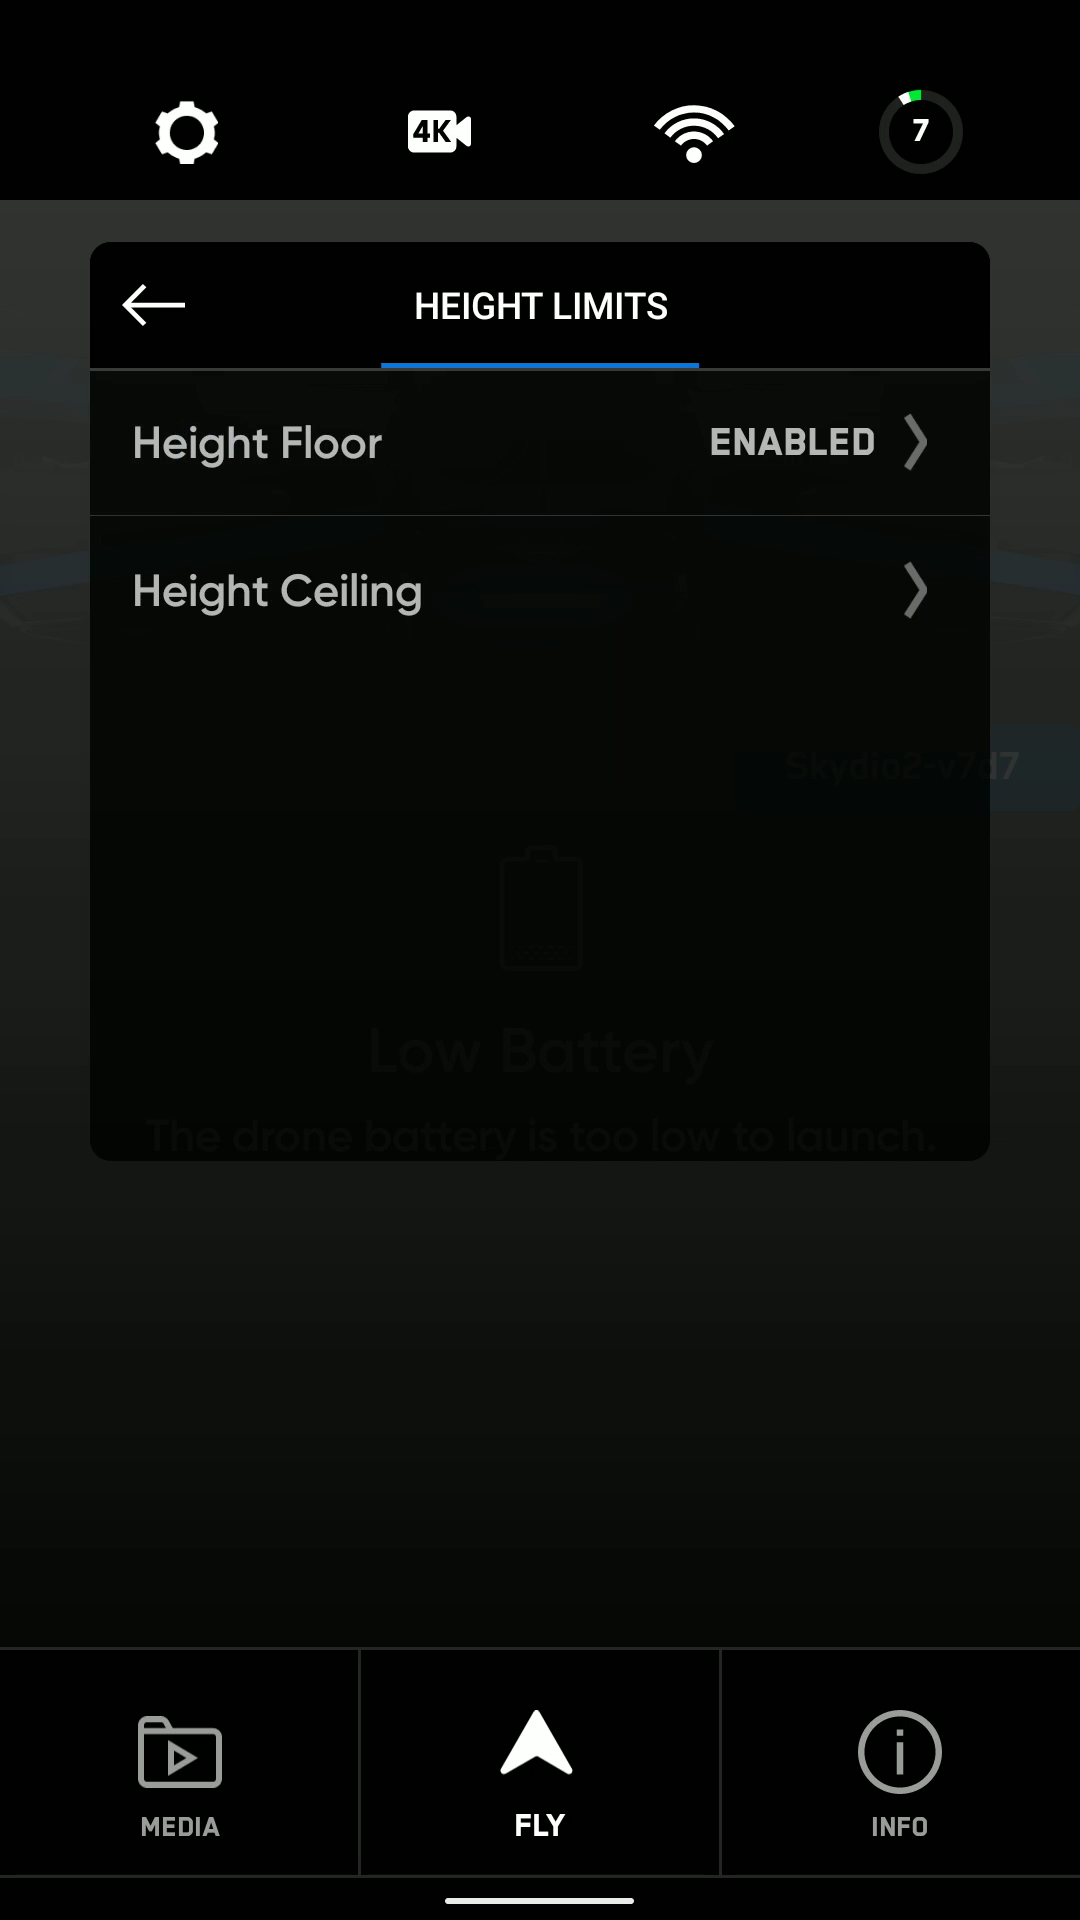 CS_S2CApp_media_UI_drone_menu_height_limits.png